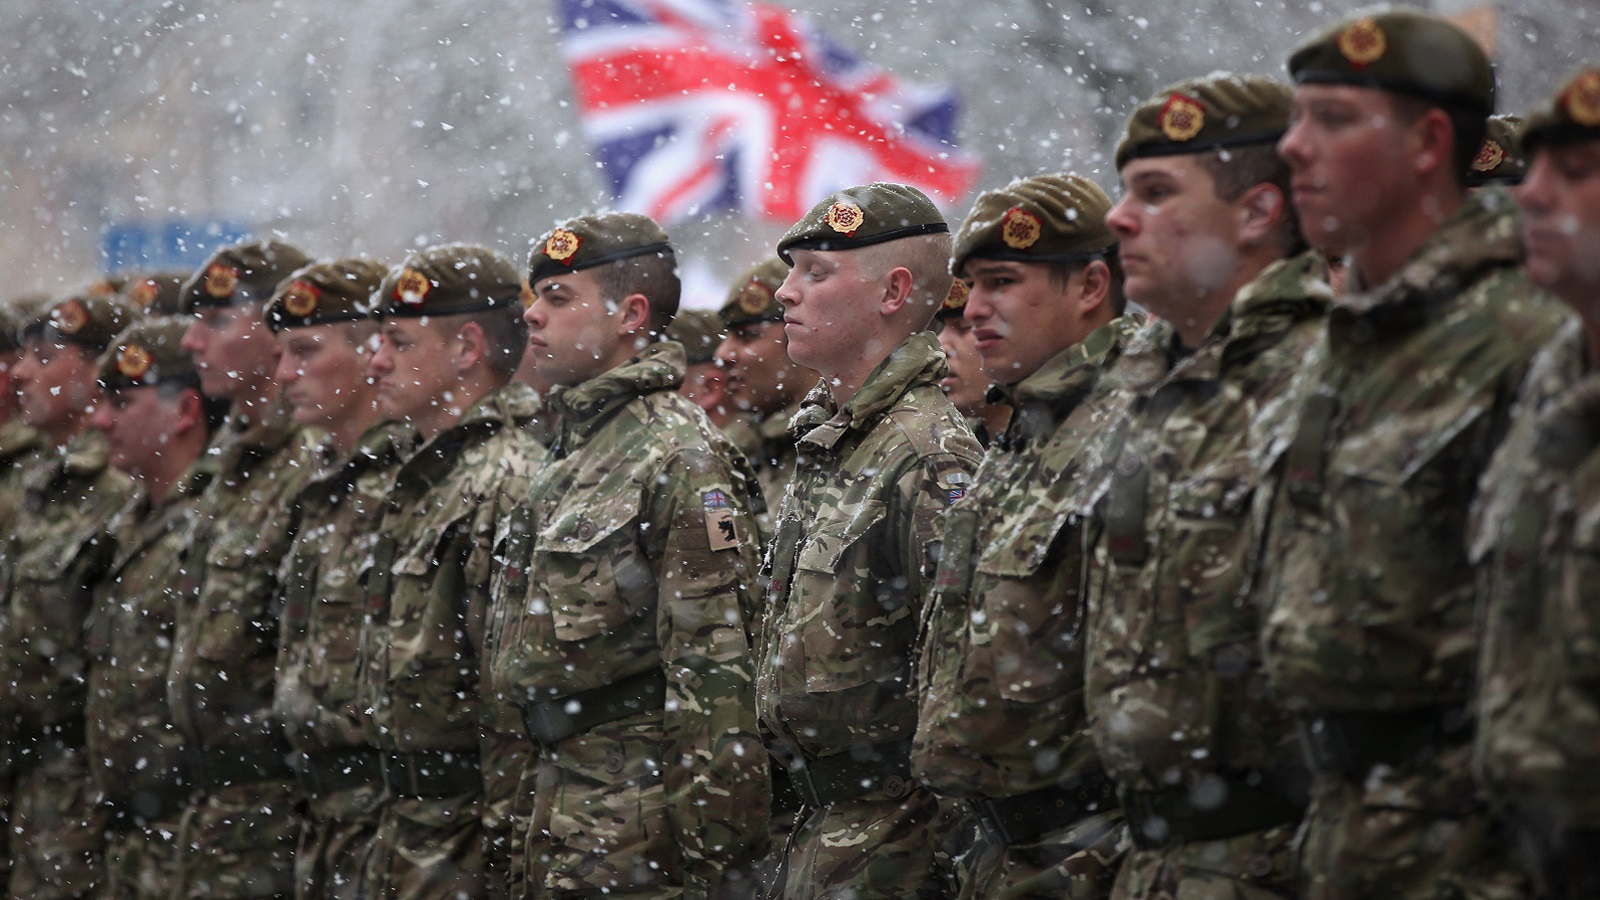 الجيش البريطاني يستعيد السيطرة على حسابيه في "تويتر" و"يوتيوب"